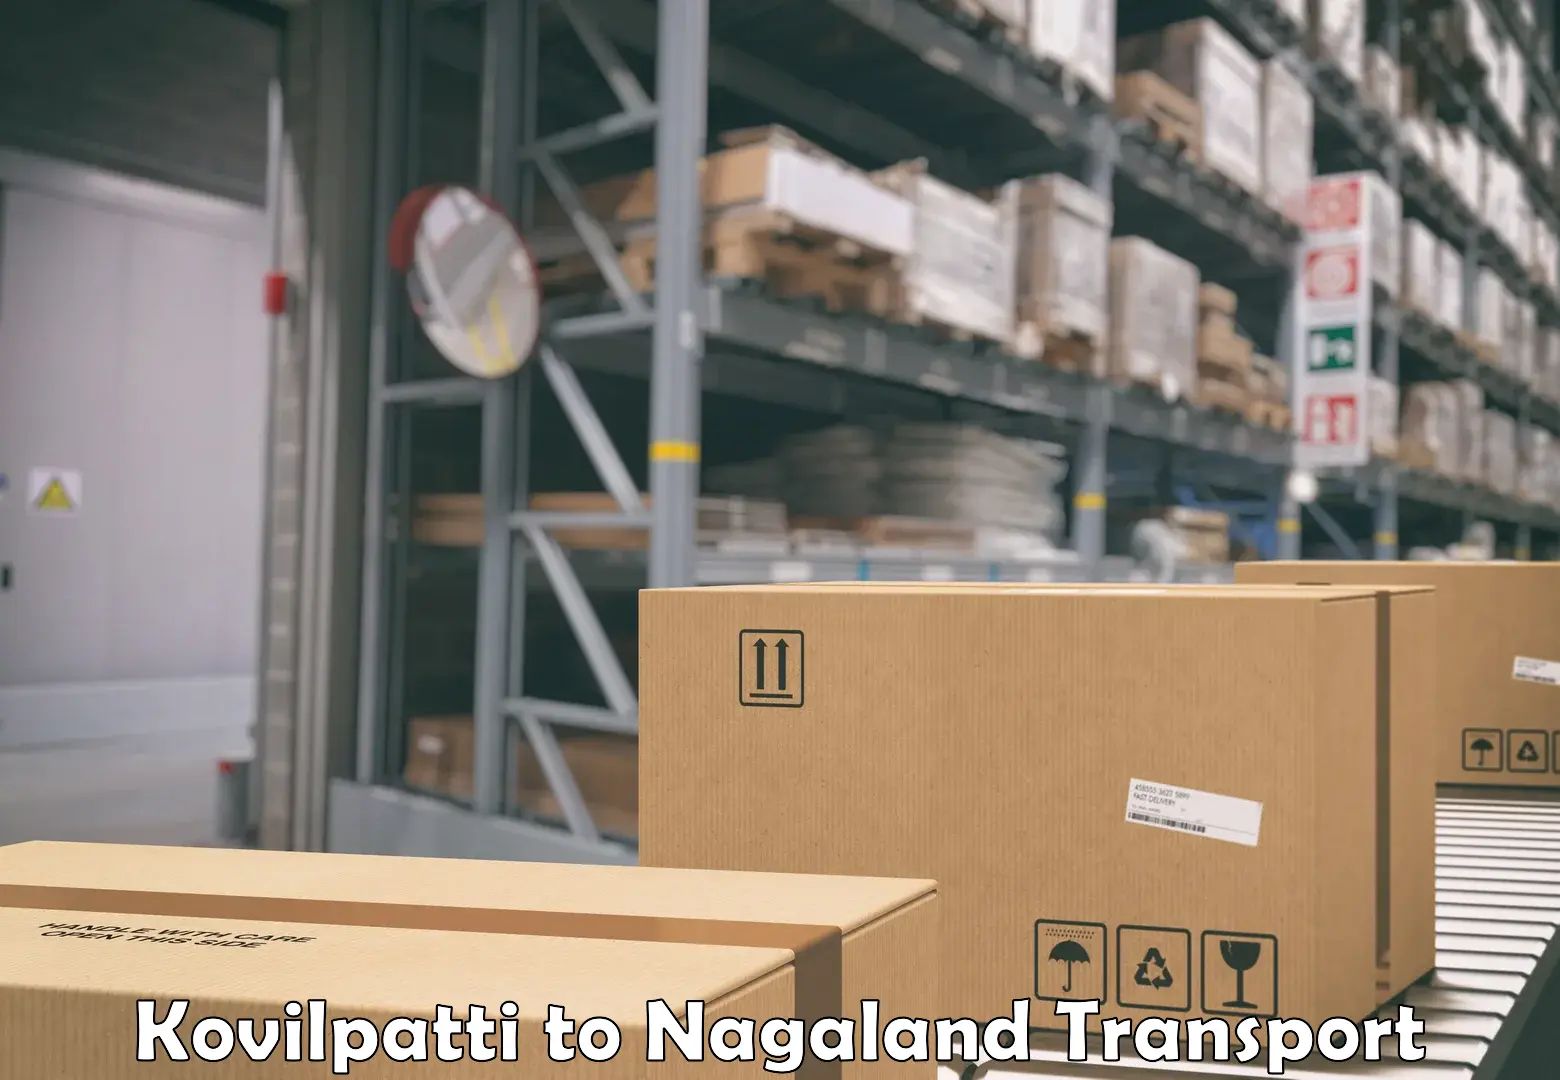 Cargo transportation services Kovilpatti to Nagaland